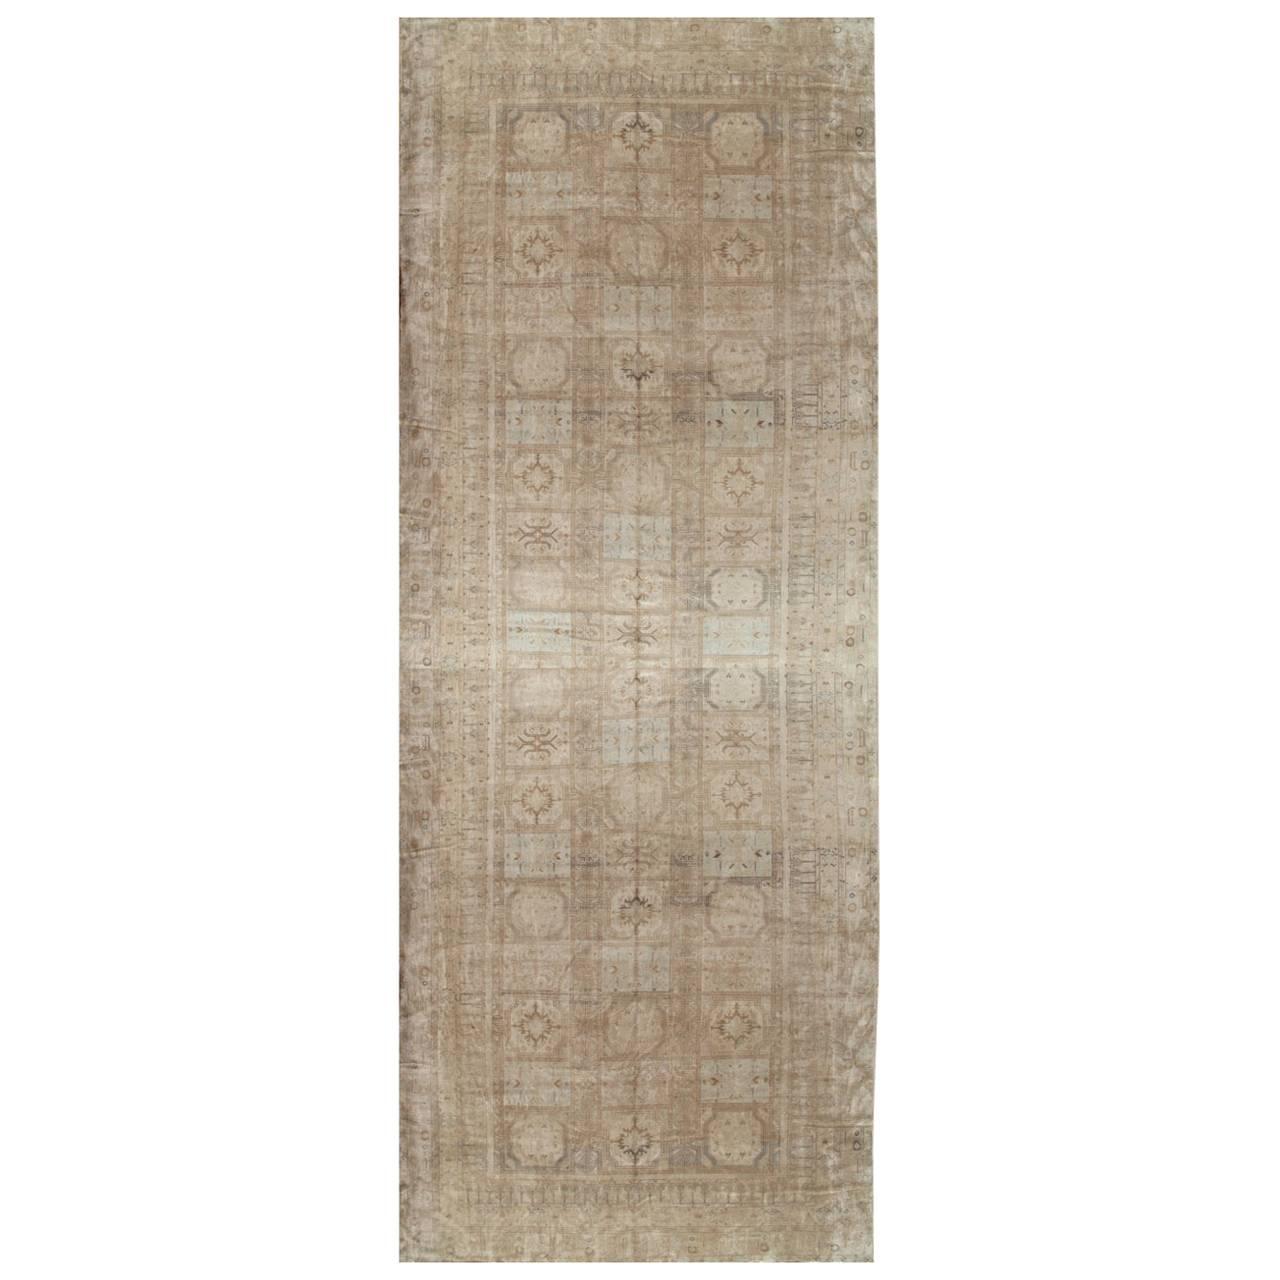 Antiker antiker Khotan-Teppich, handgefertigter orientalischer Teppich, weich, beige, braun, taupefarben